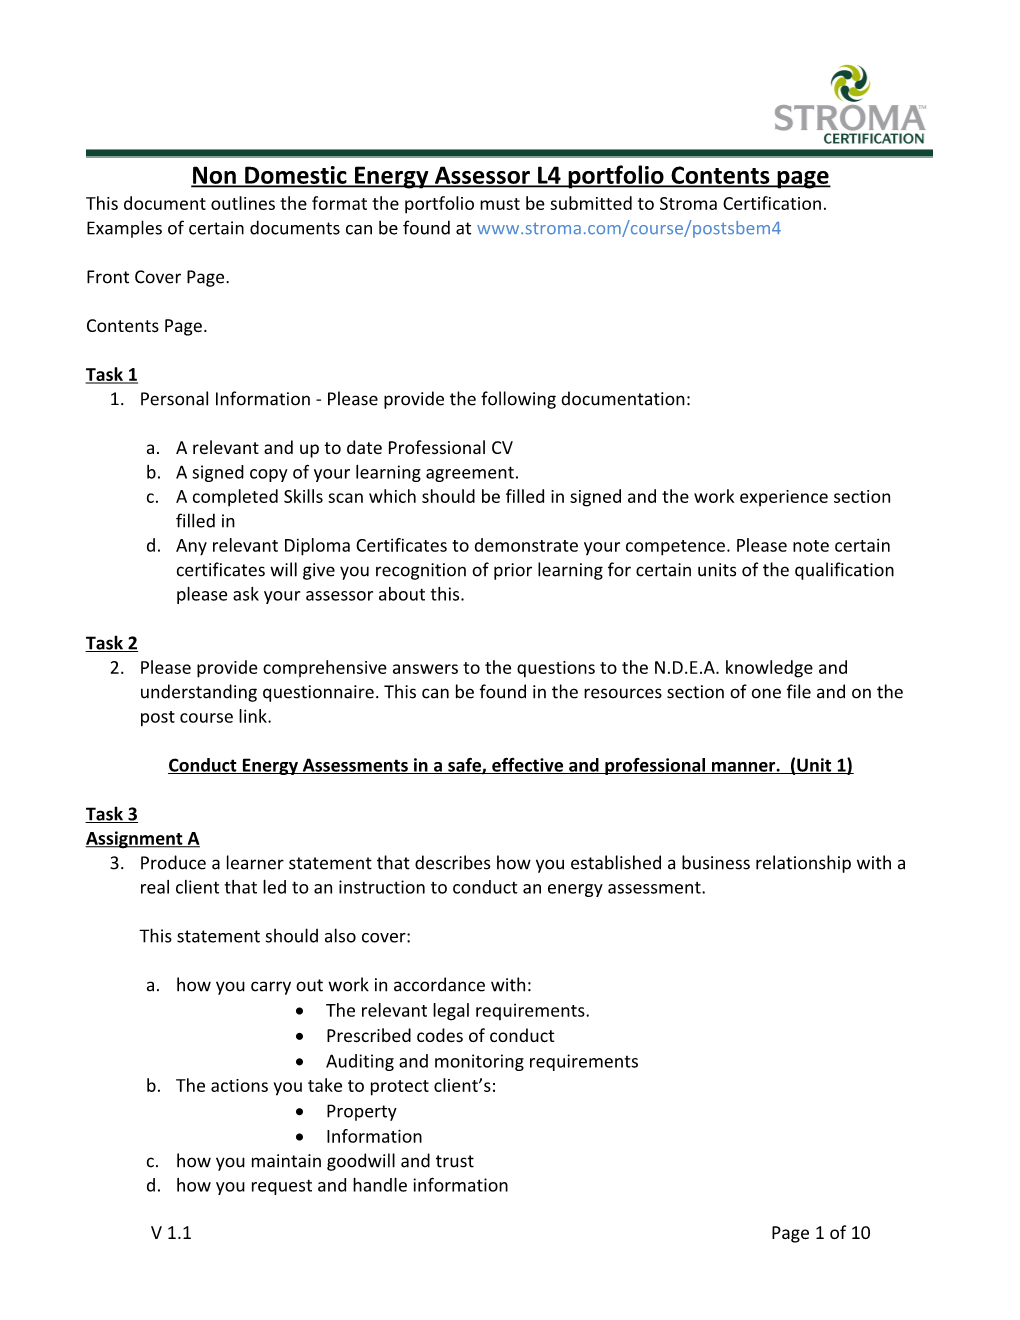 Non Domestic Energy Assessor L4 Portfolio Contents Page